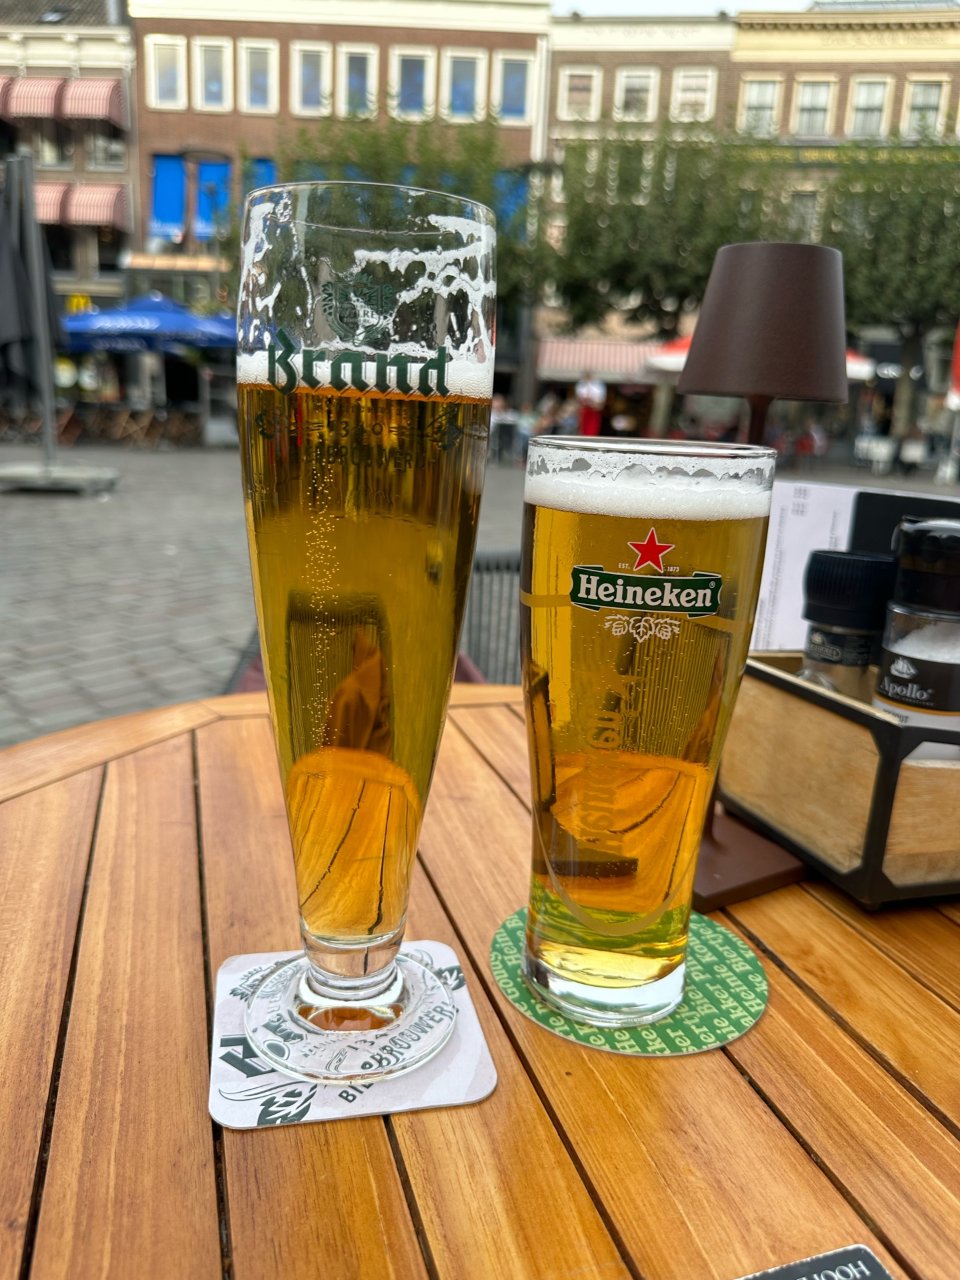 荷兰的啤酒和德国的保时捷...